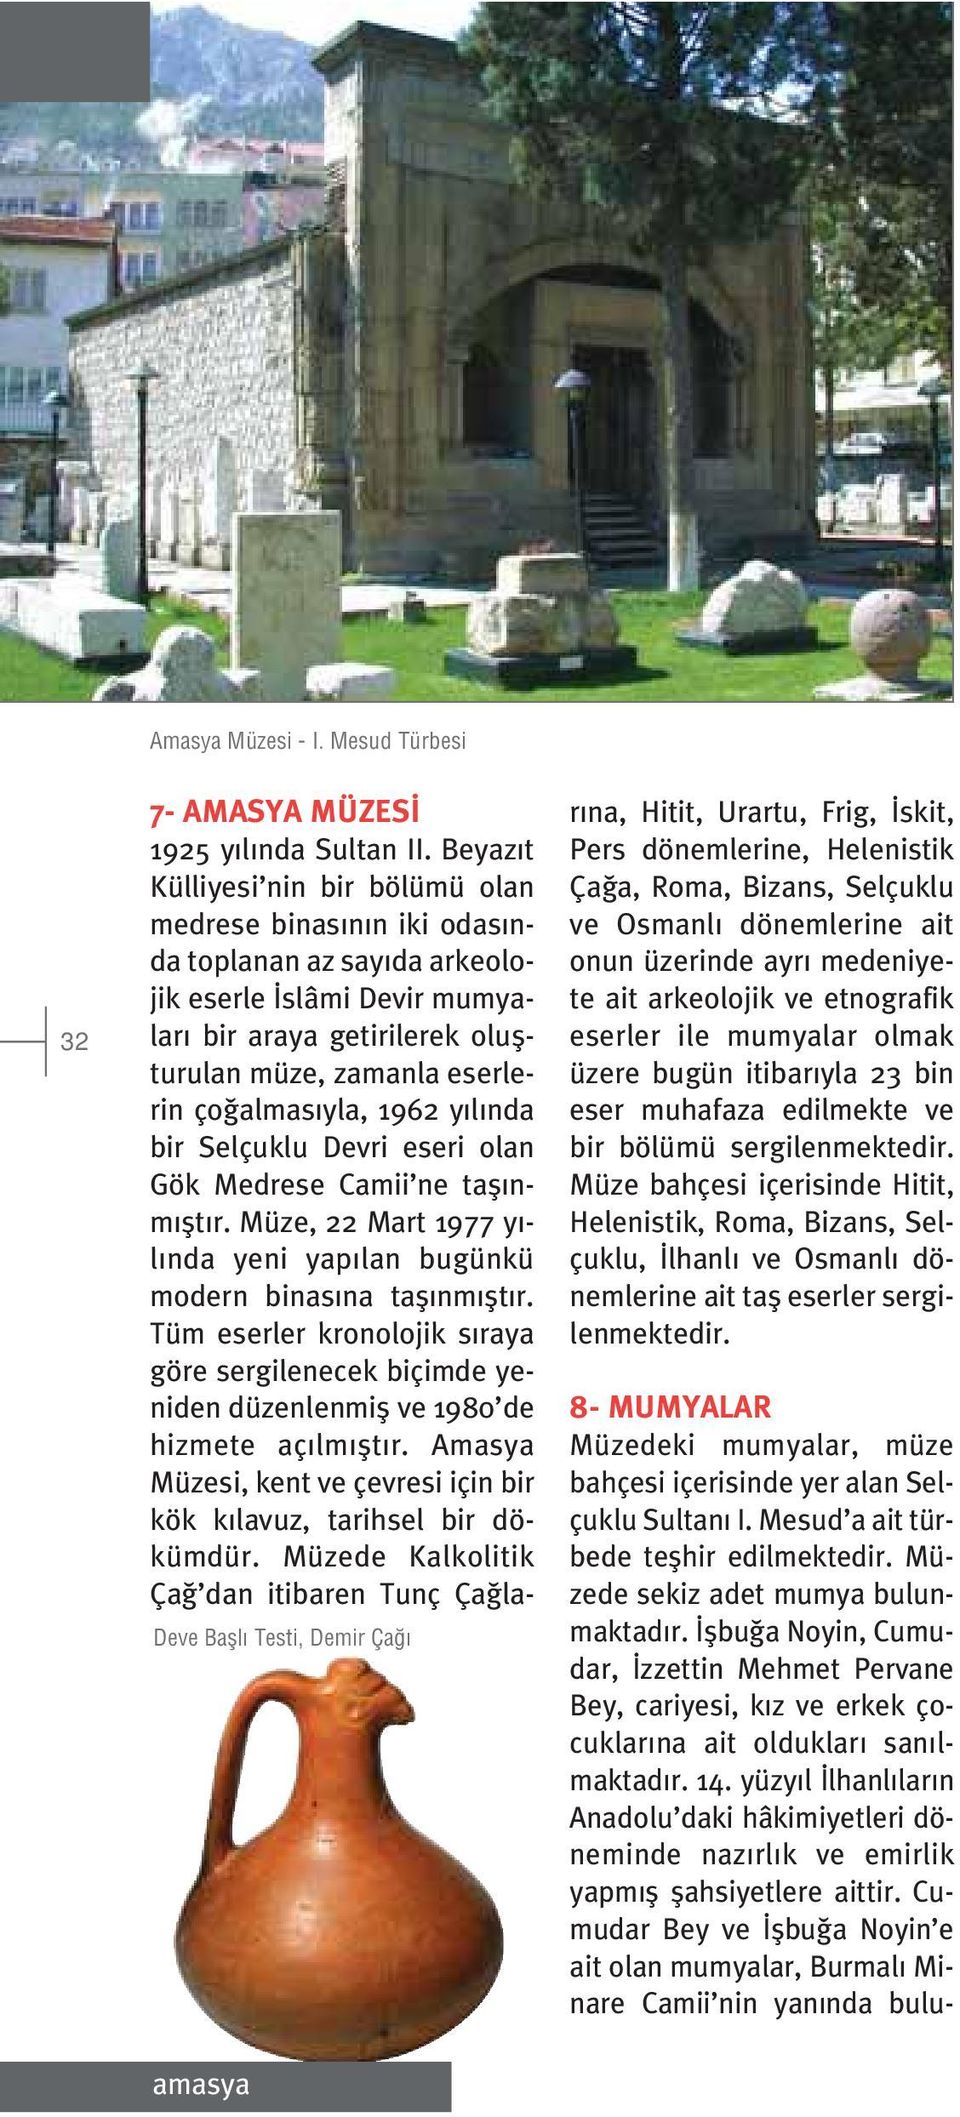 1962 y l nda bir Selçuklu Devri eseri olan Gök Medrese Camii ne tafl nm flt r. Müze, 22 Mart 1977 y - l nda yeni yap lan bugünkü modern binas na tafl nm flt r.